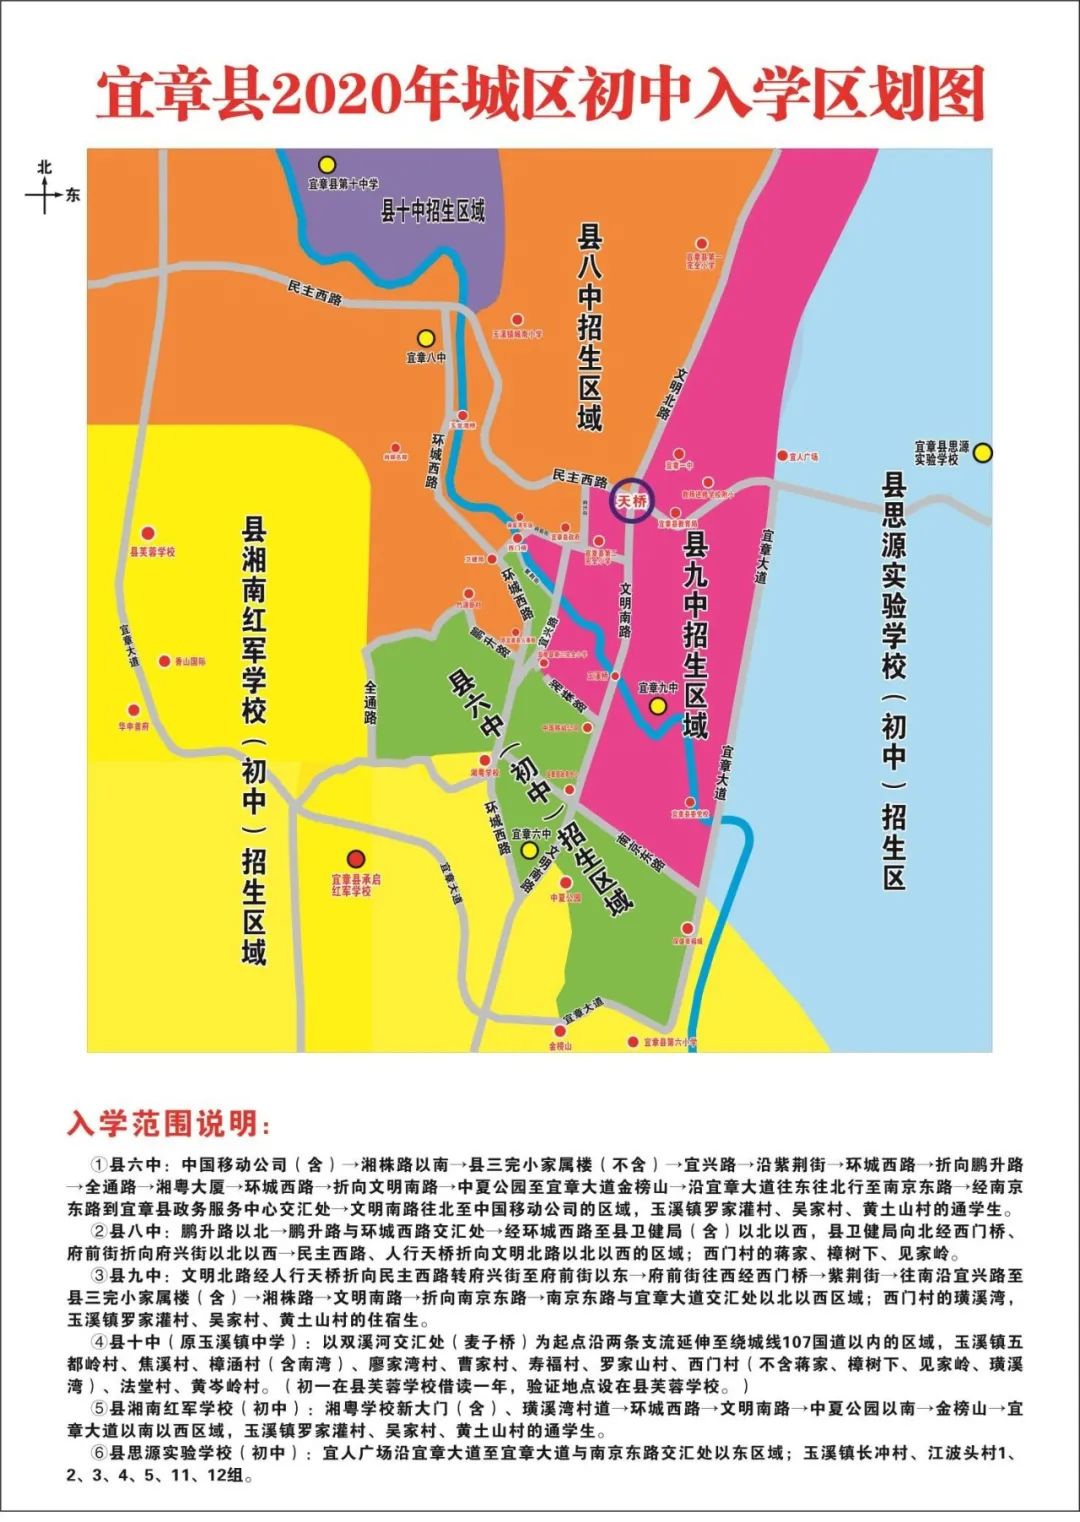 宜章县城区及周边义务教育学校学生入学工作方案公布